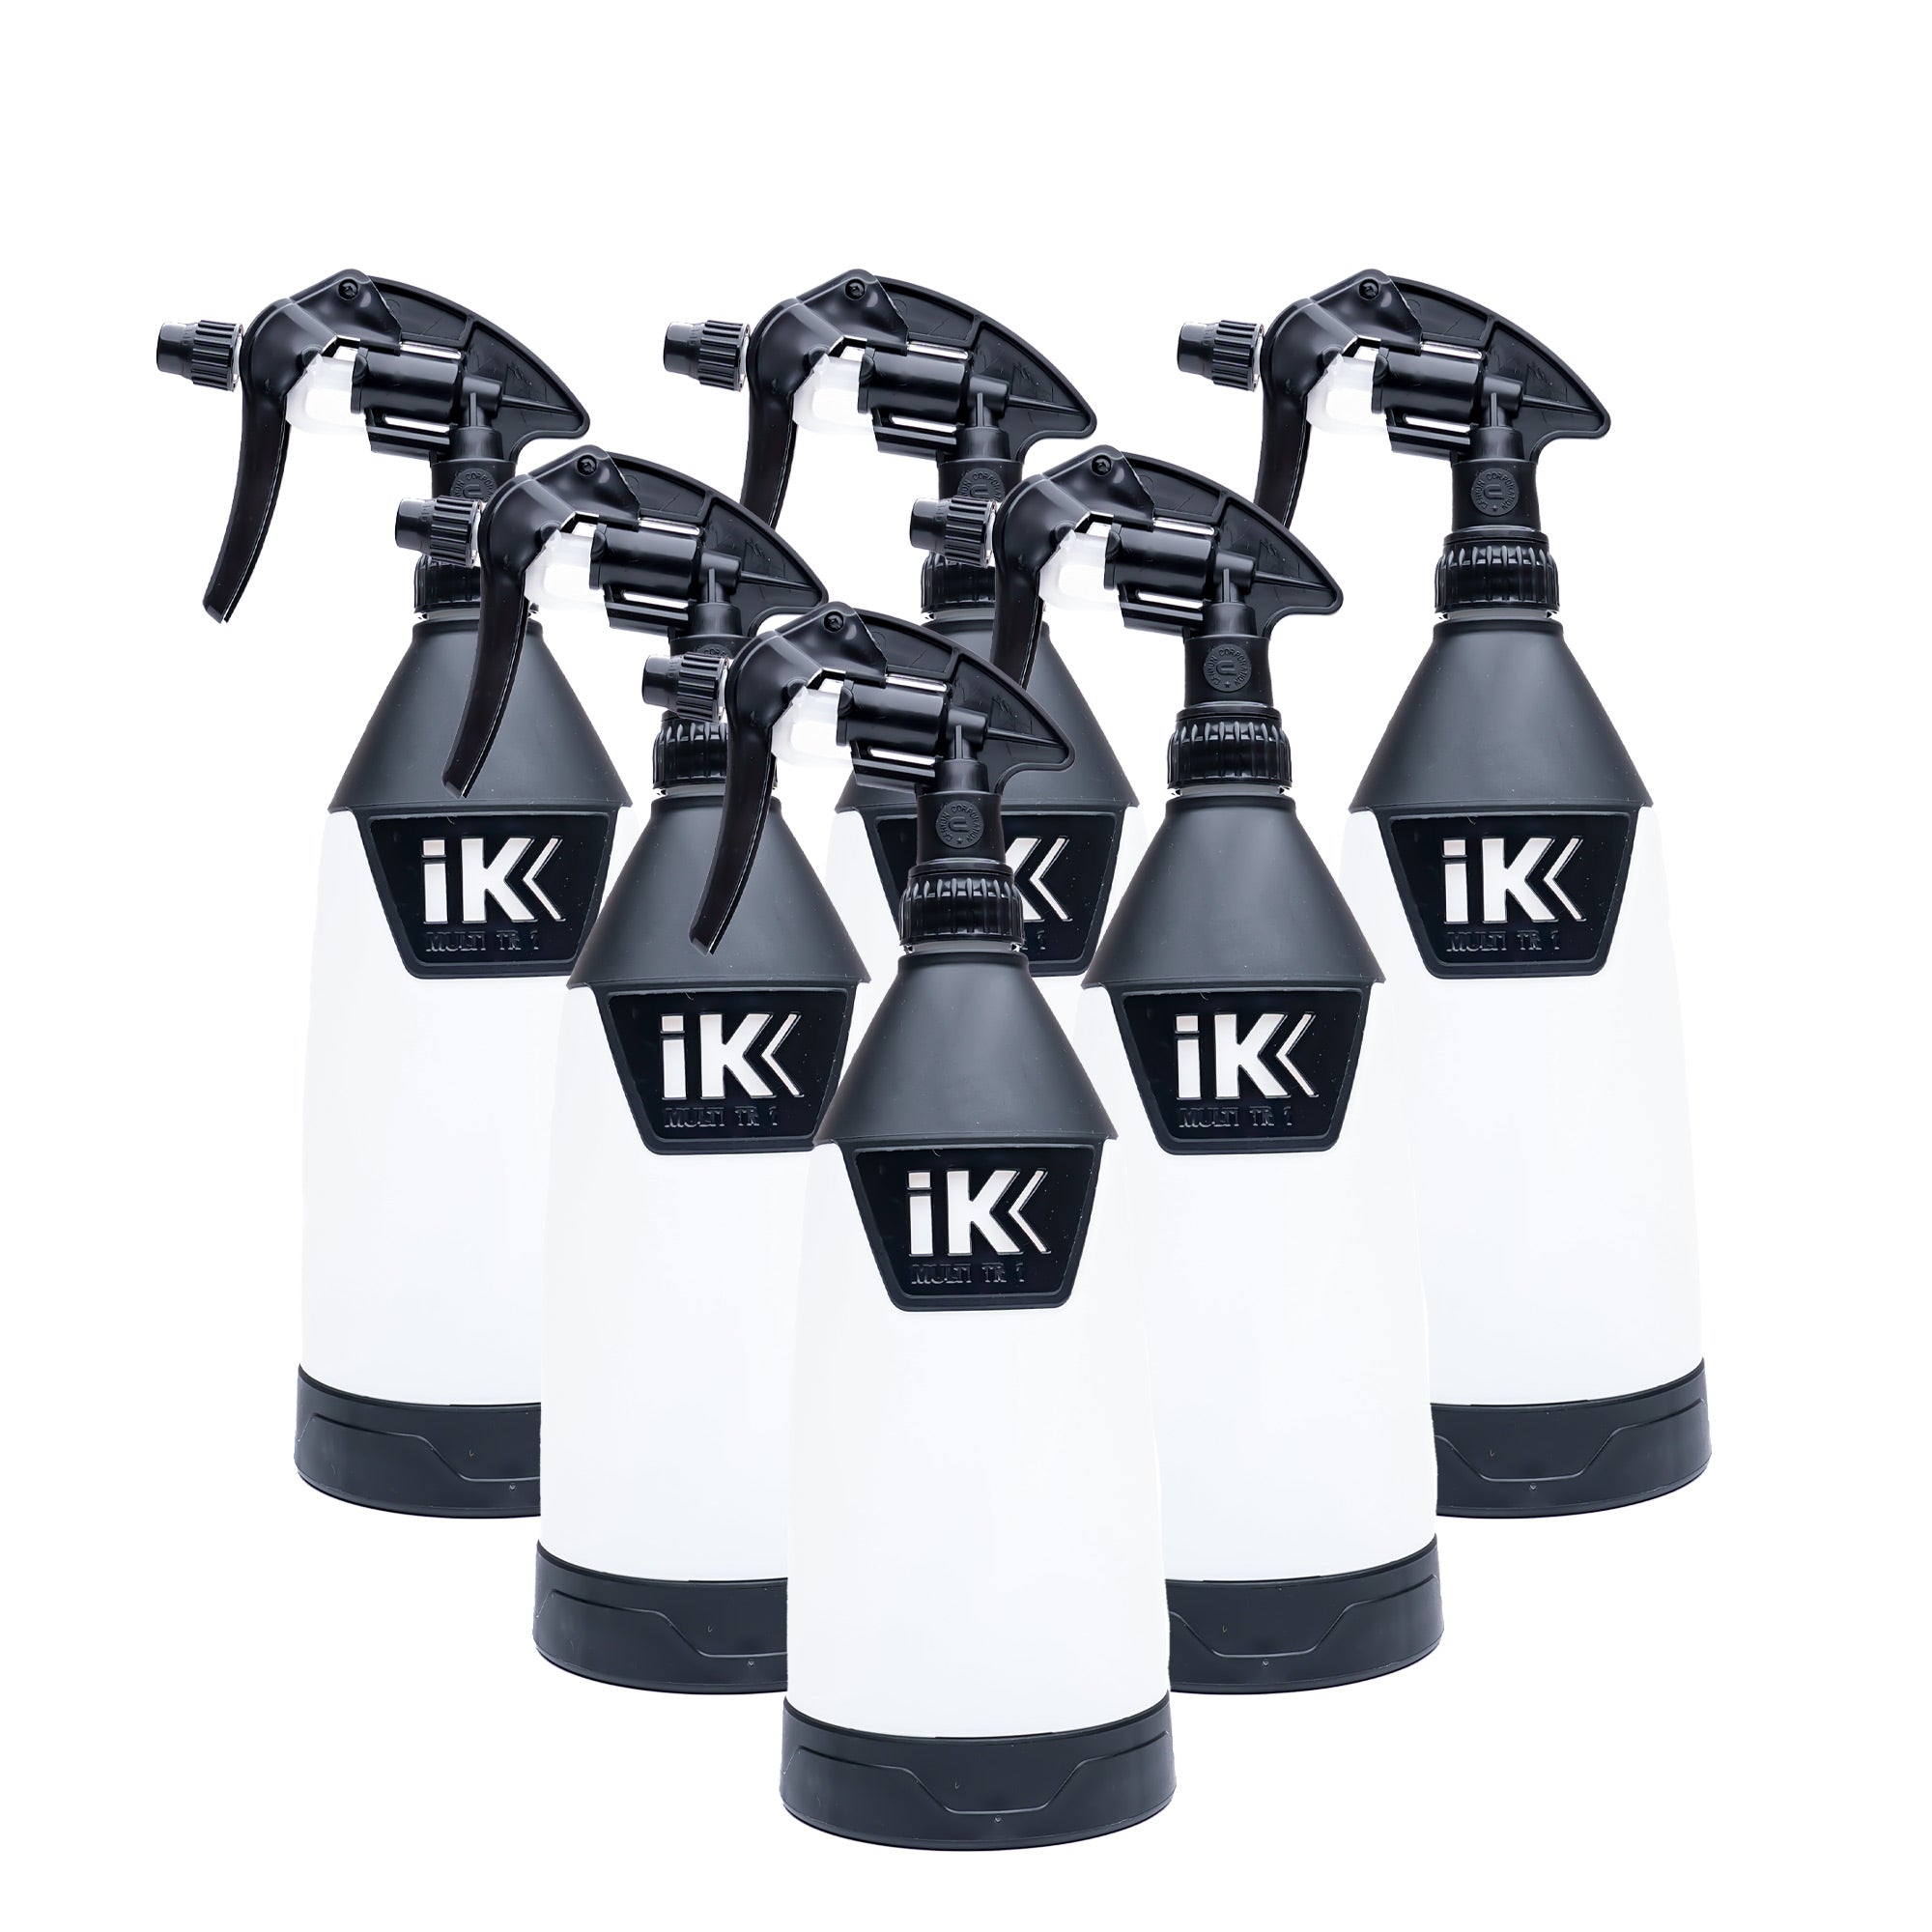 IK Spray Bottle  Fargo Detailing LLC